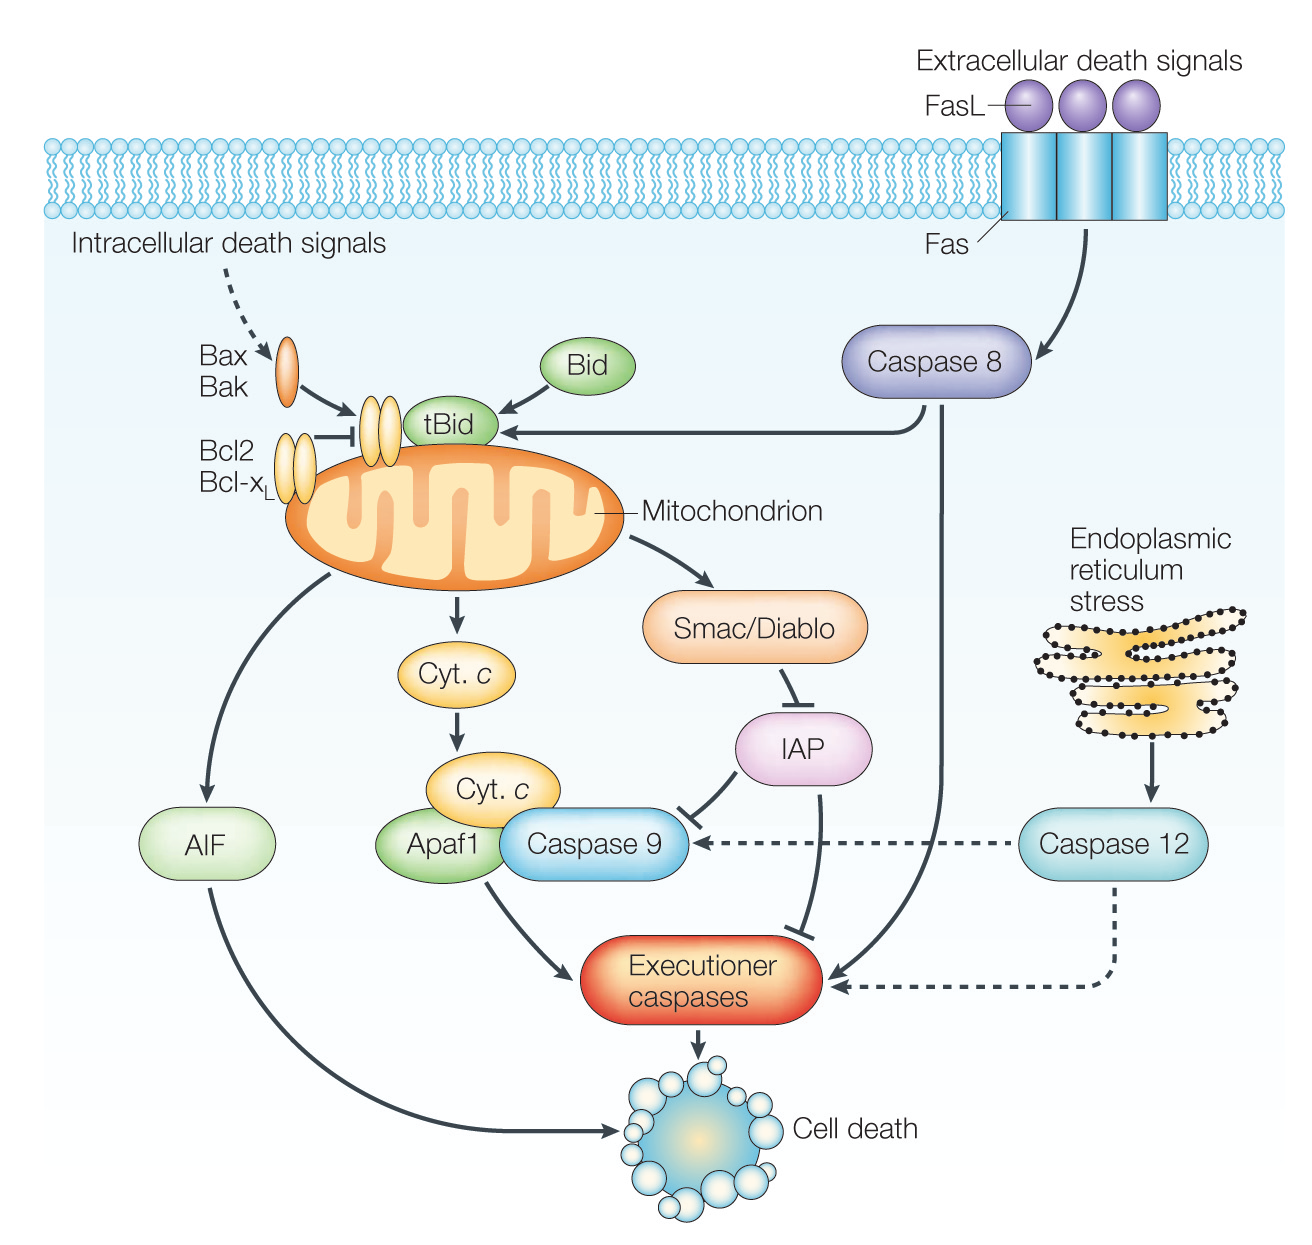 Obr. 8. Mechanismy apoptózy (Vila a Przedborski 2003) Vnûj í signály, spou tûjí apoptózu aktivací transmembránov ch receptorû. Receptor Fas je takto aktivován navázáním ligandu FasL.